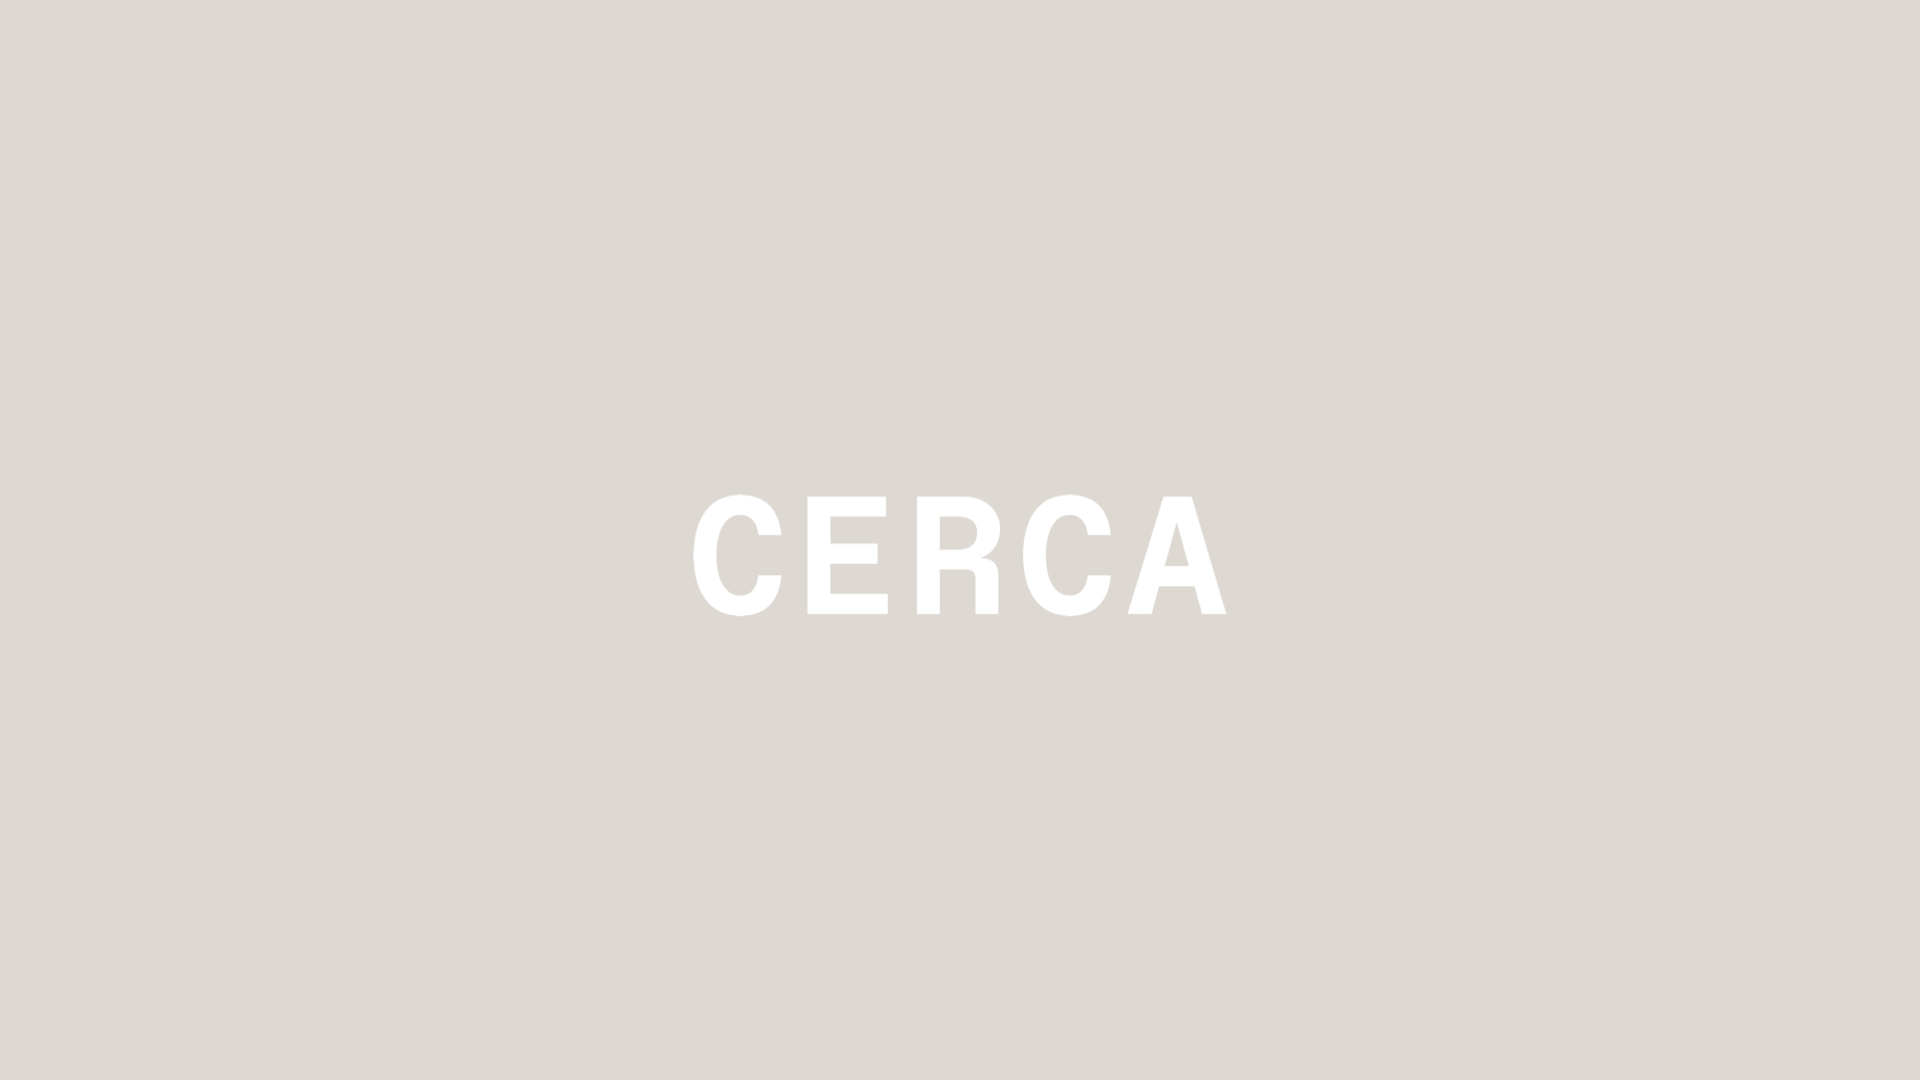 Cerca Logotype